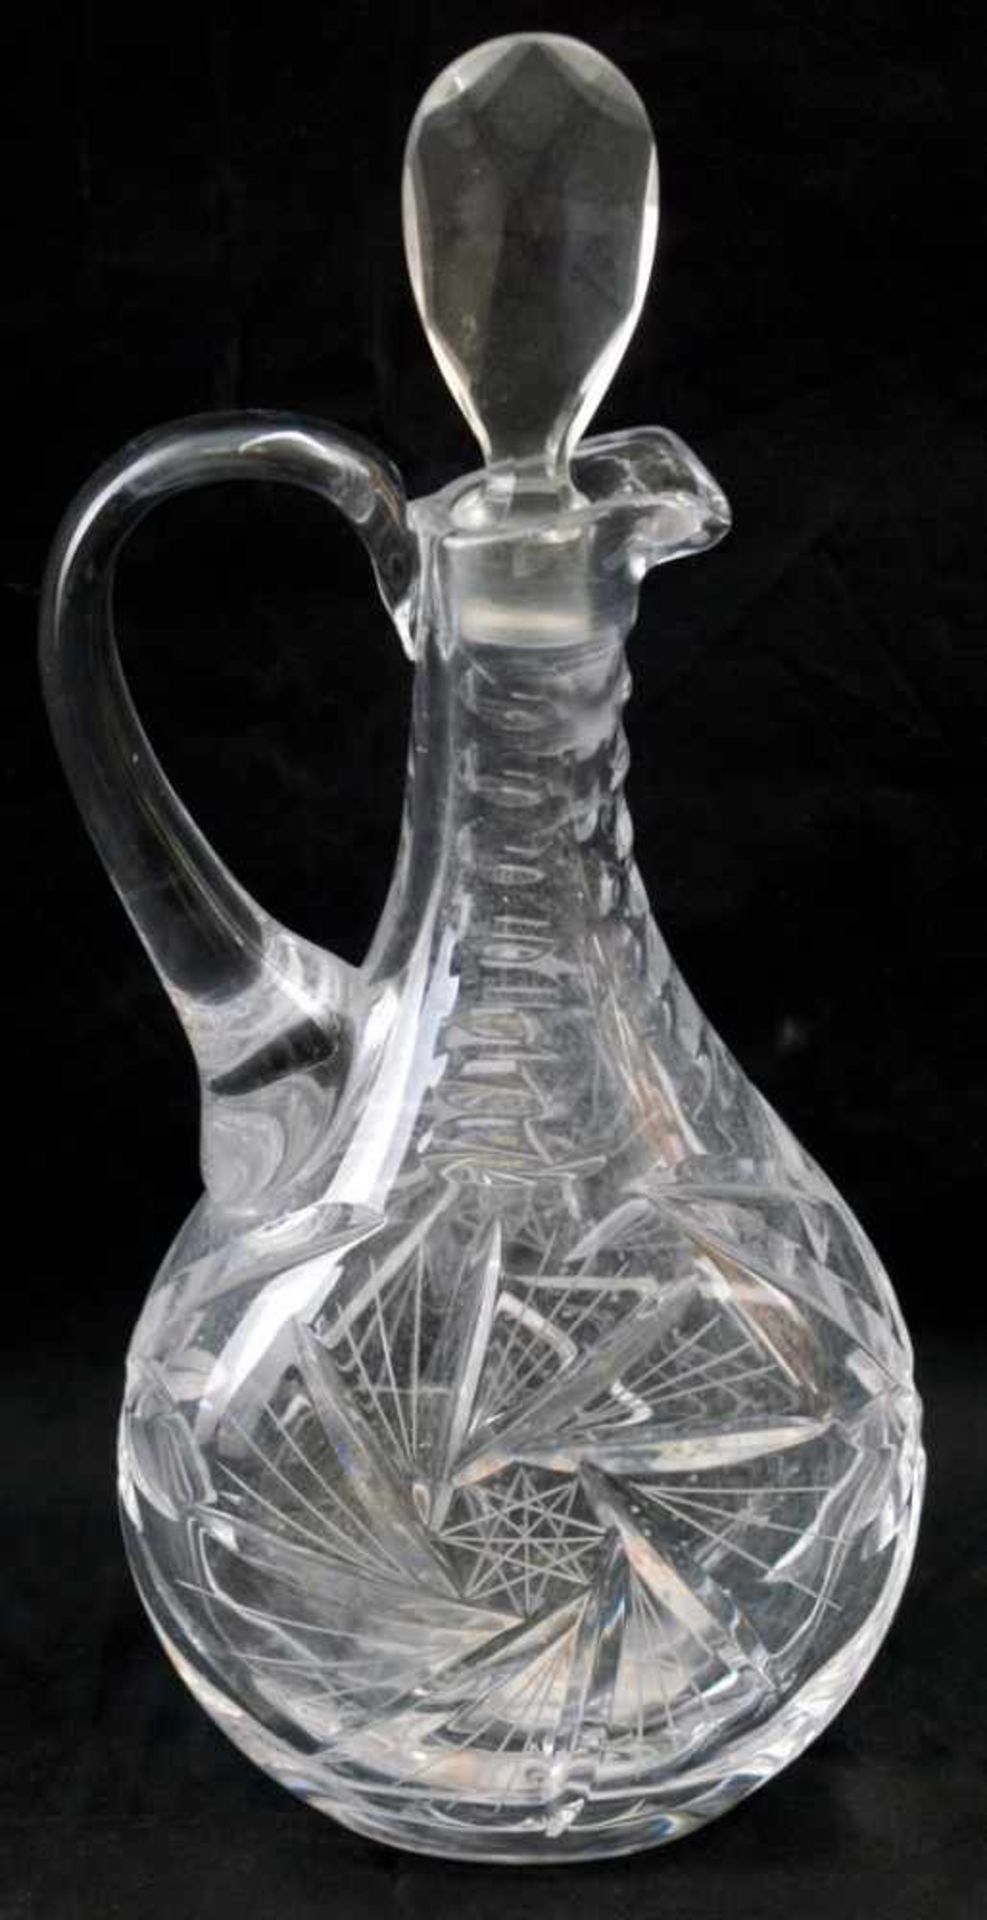 Karaffe farbl. Glas, geschliffen verziert, oval, H 32 cm